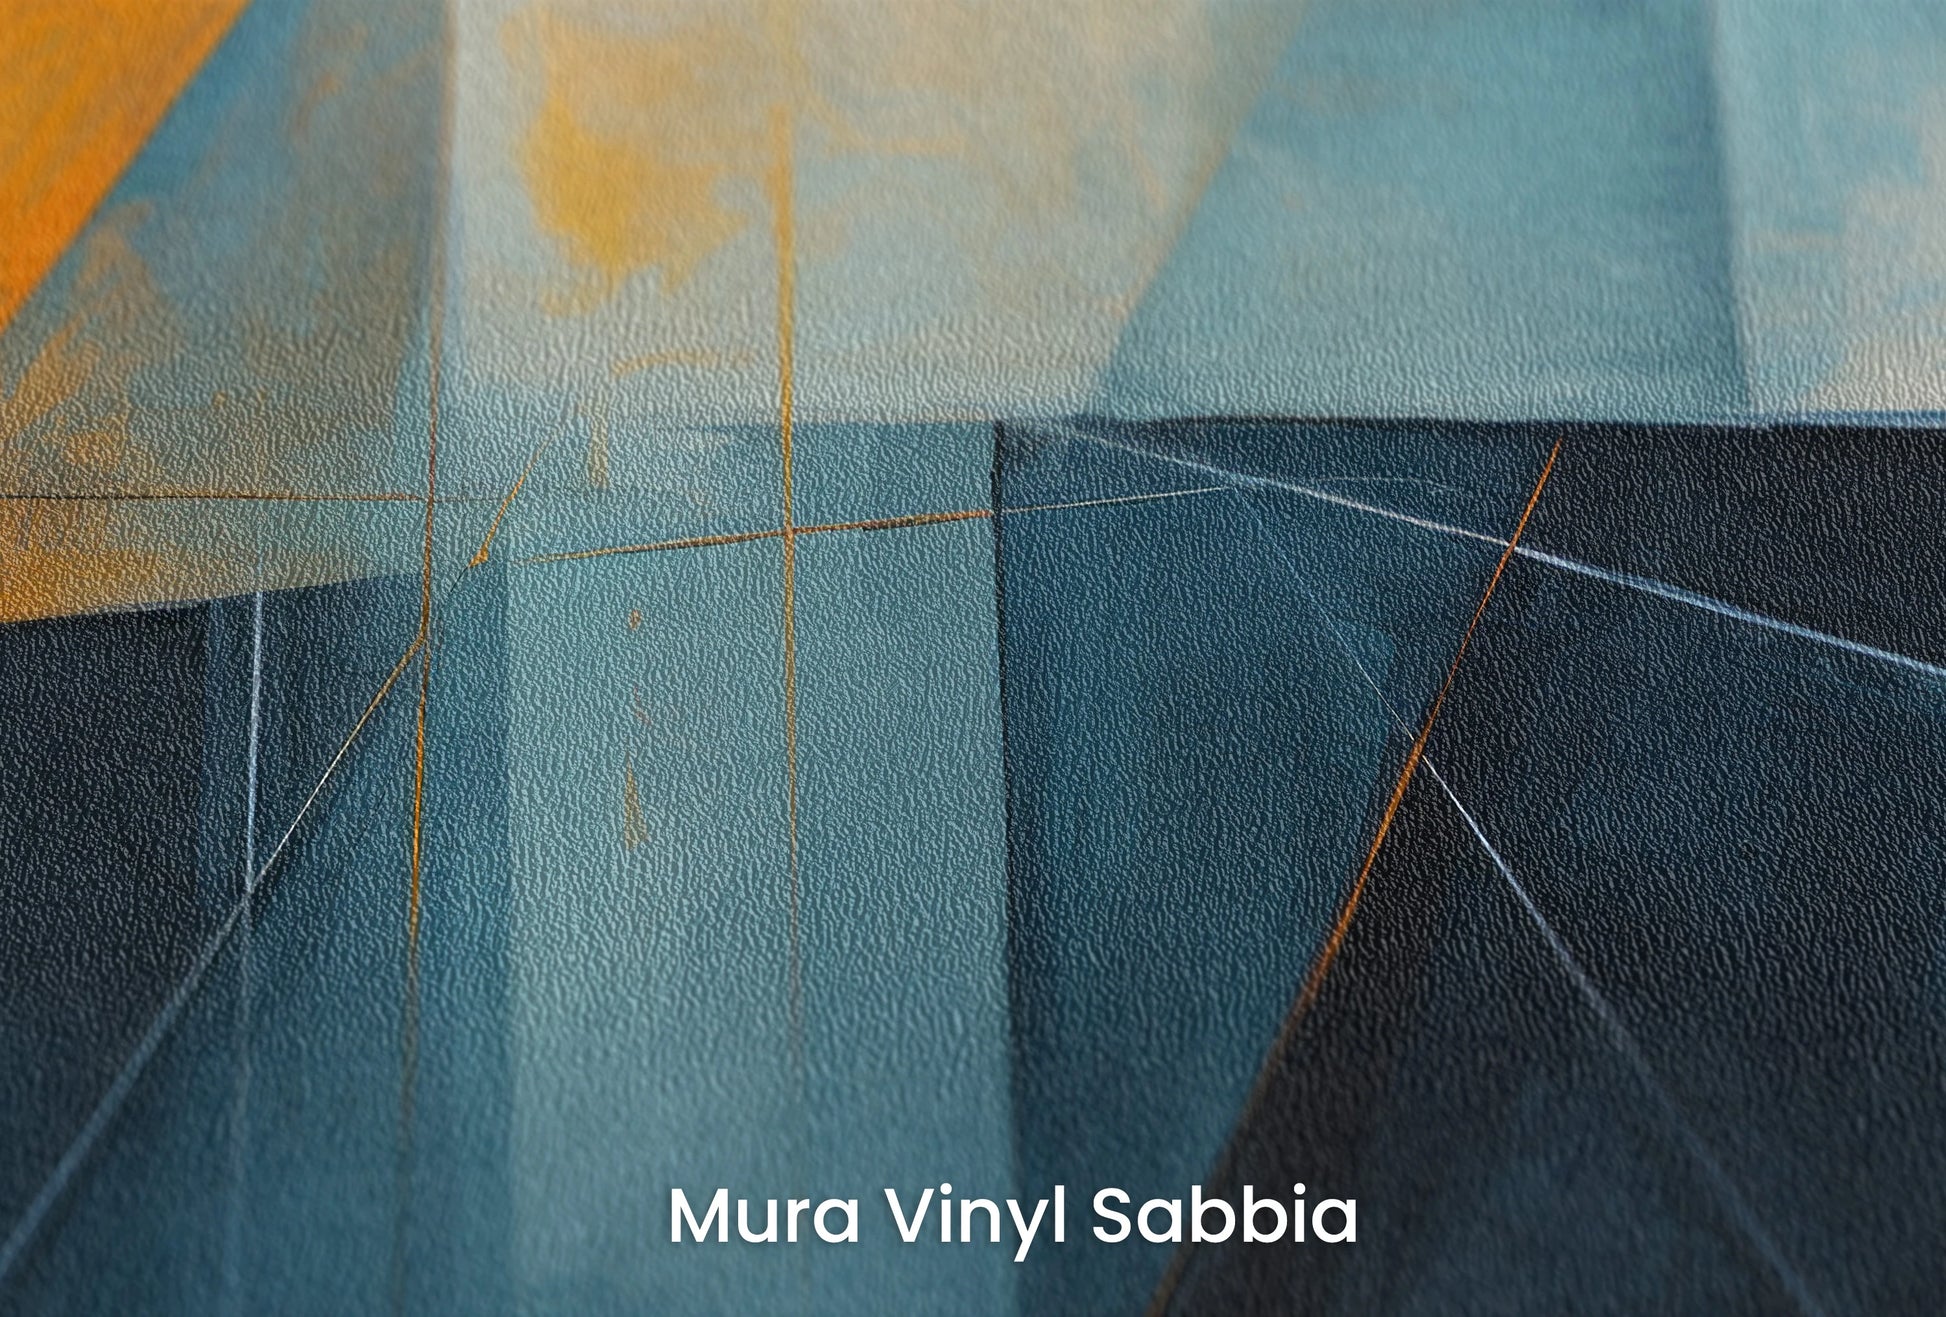 Zbliżenie na artystyczną fototapetę o nazwie Azure Dynamics na podłożu Mura Vinyl Sabbia struktura grubego ziarna piasku.